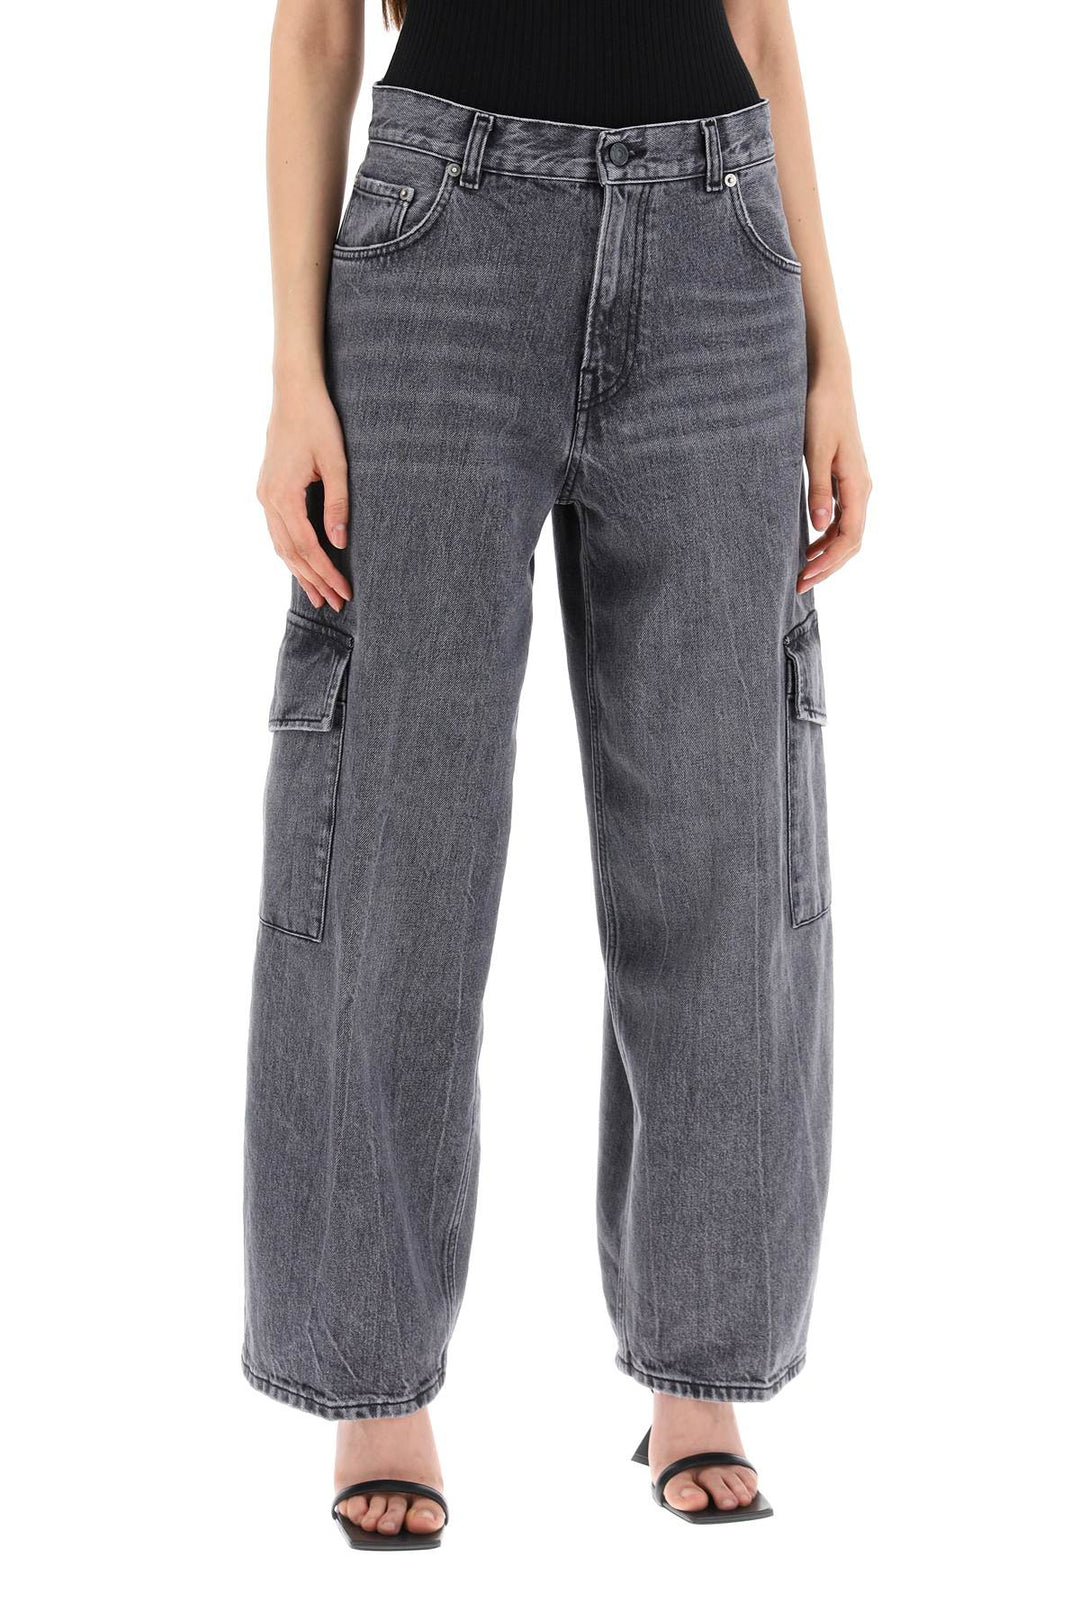 Haikure Bethany Cargo Jeans   Grey